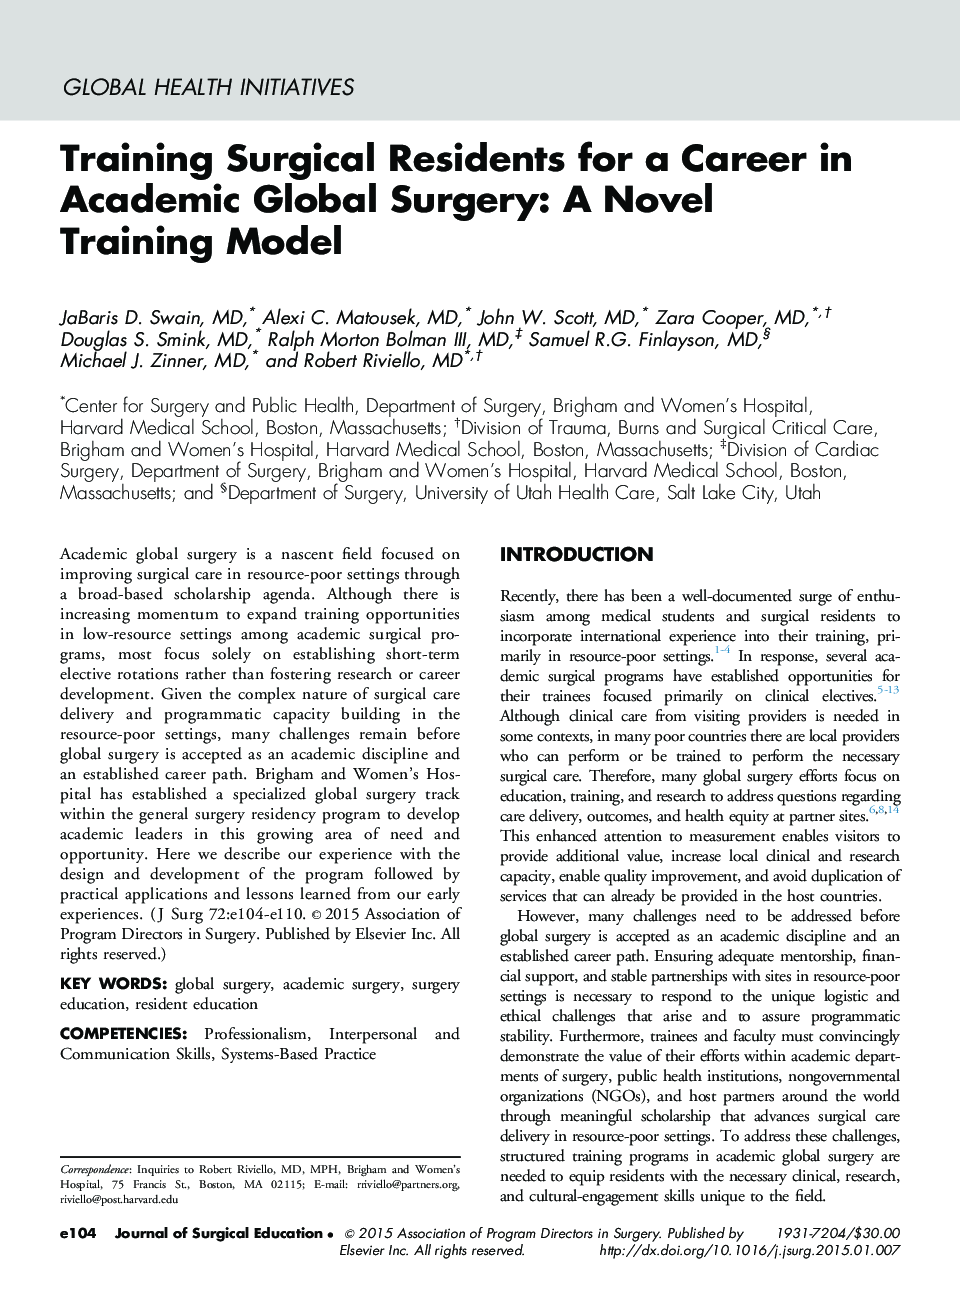 آموزش جراحان ساکنان برای حرفه ای در جراحی های دانشگاهی: یک مدل آموزش رمان 